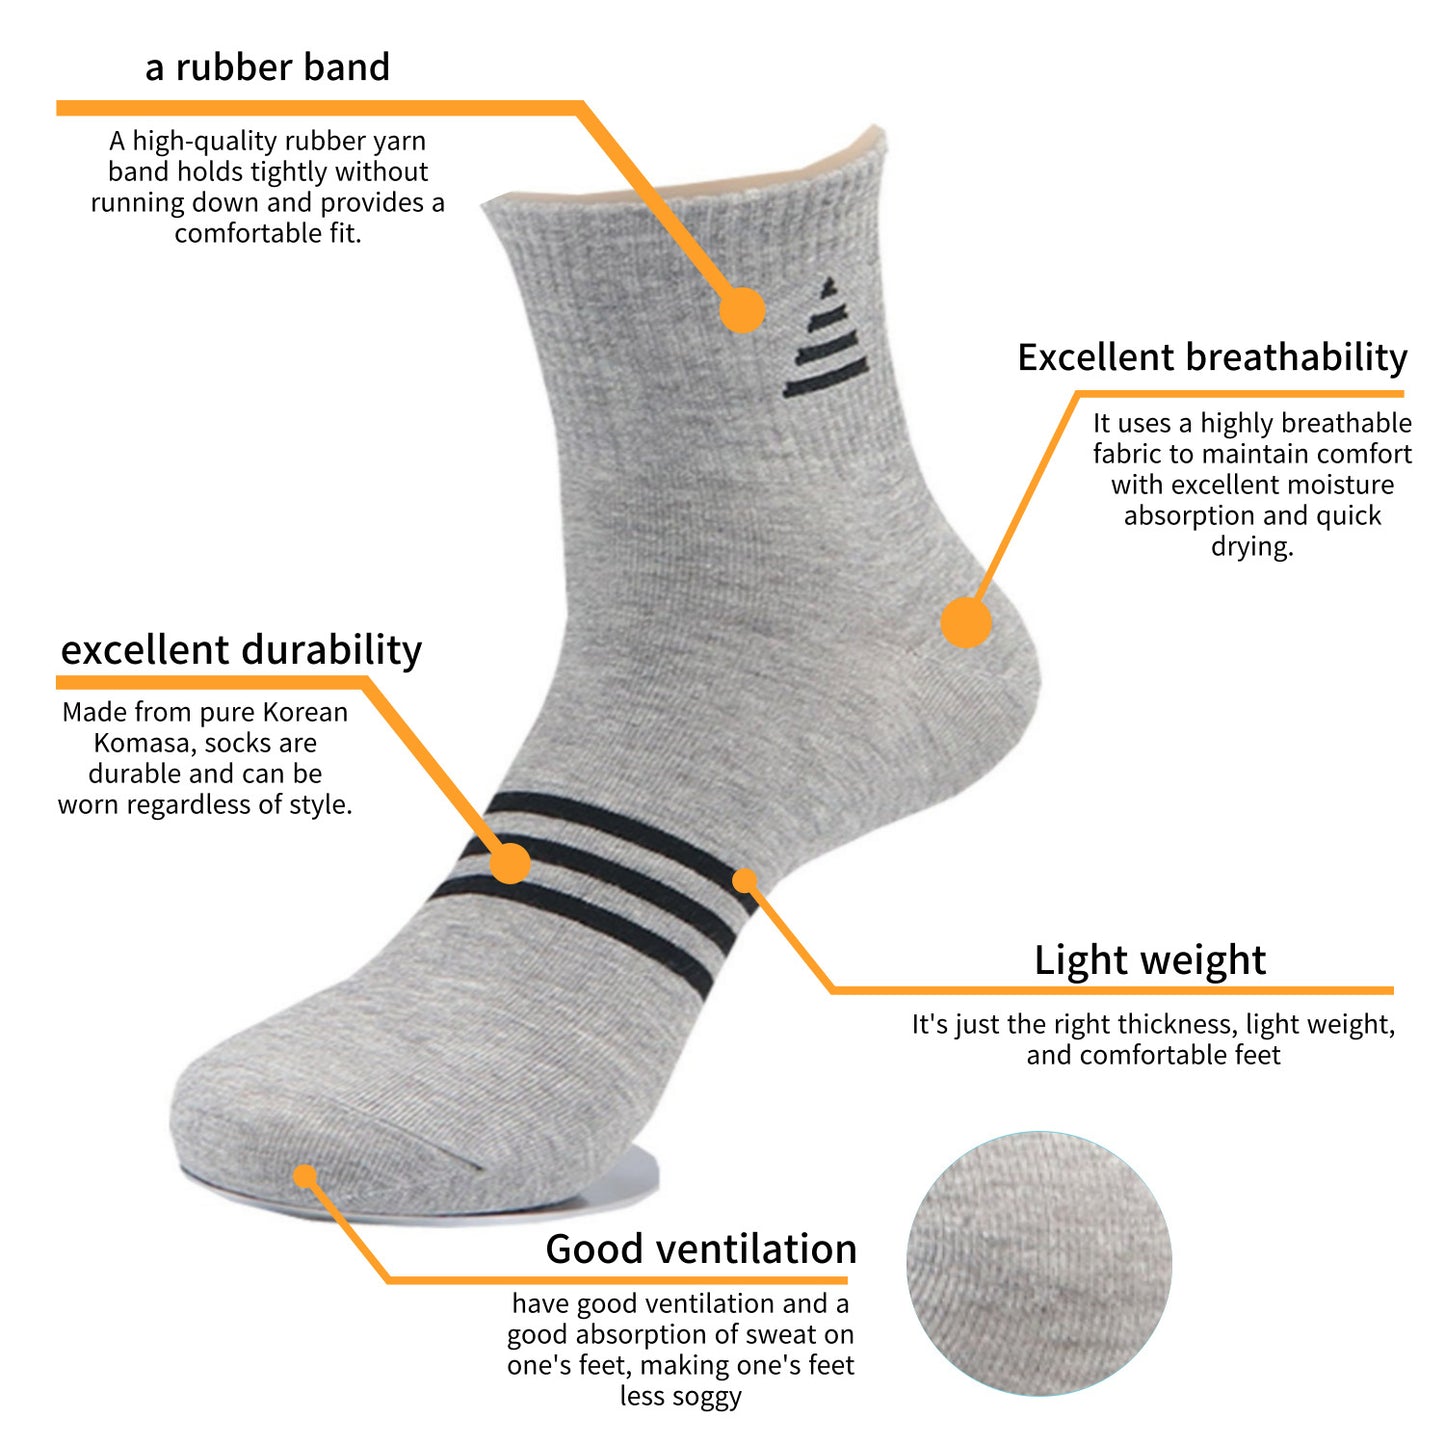 I&J Men's gentleman, sports triangular socks Cotton Moisture Wicking Cushion Crew Socks(6Pairs/12pairs)